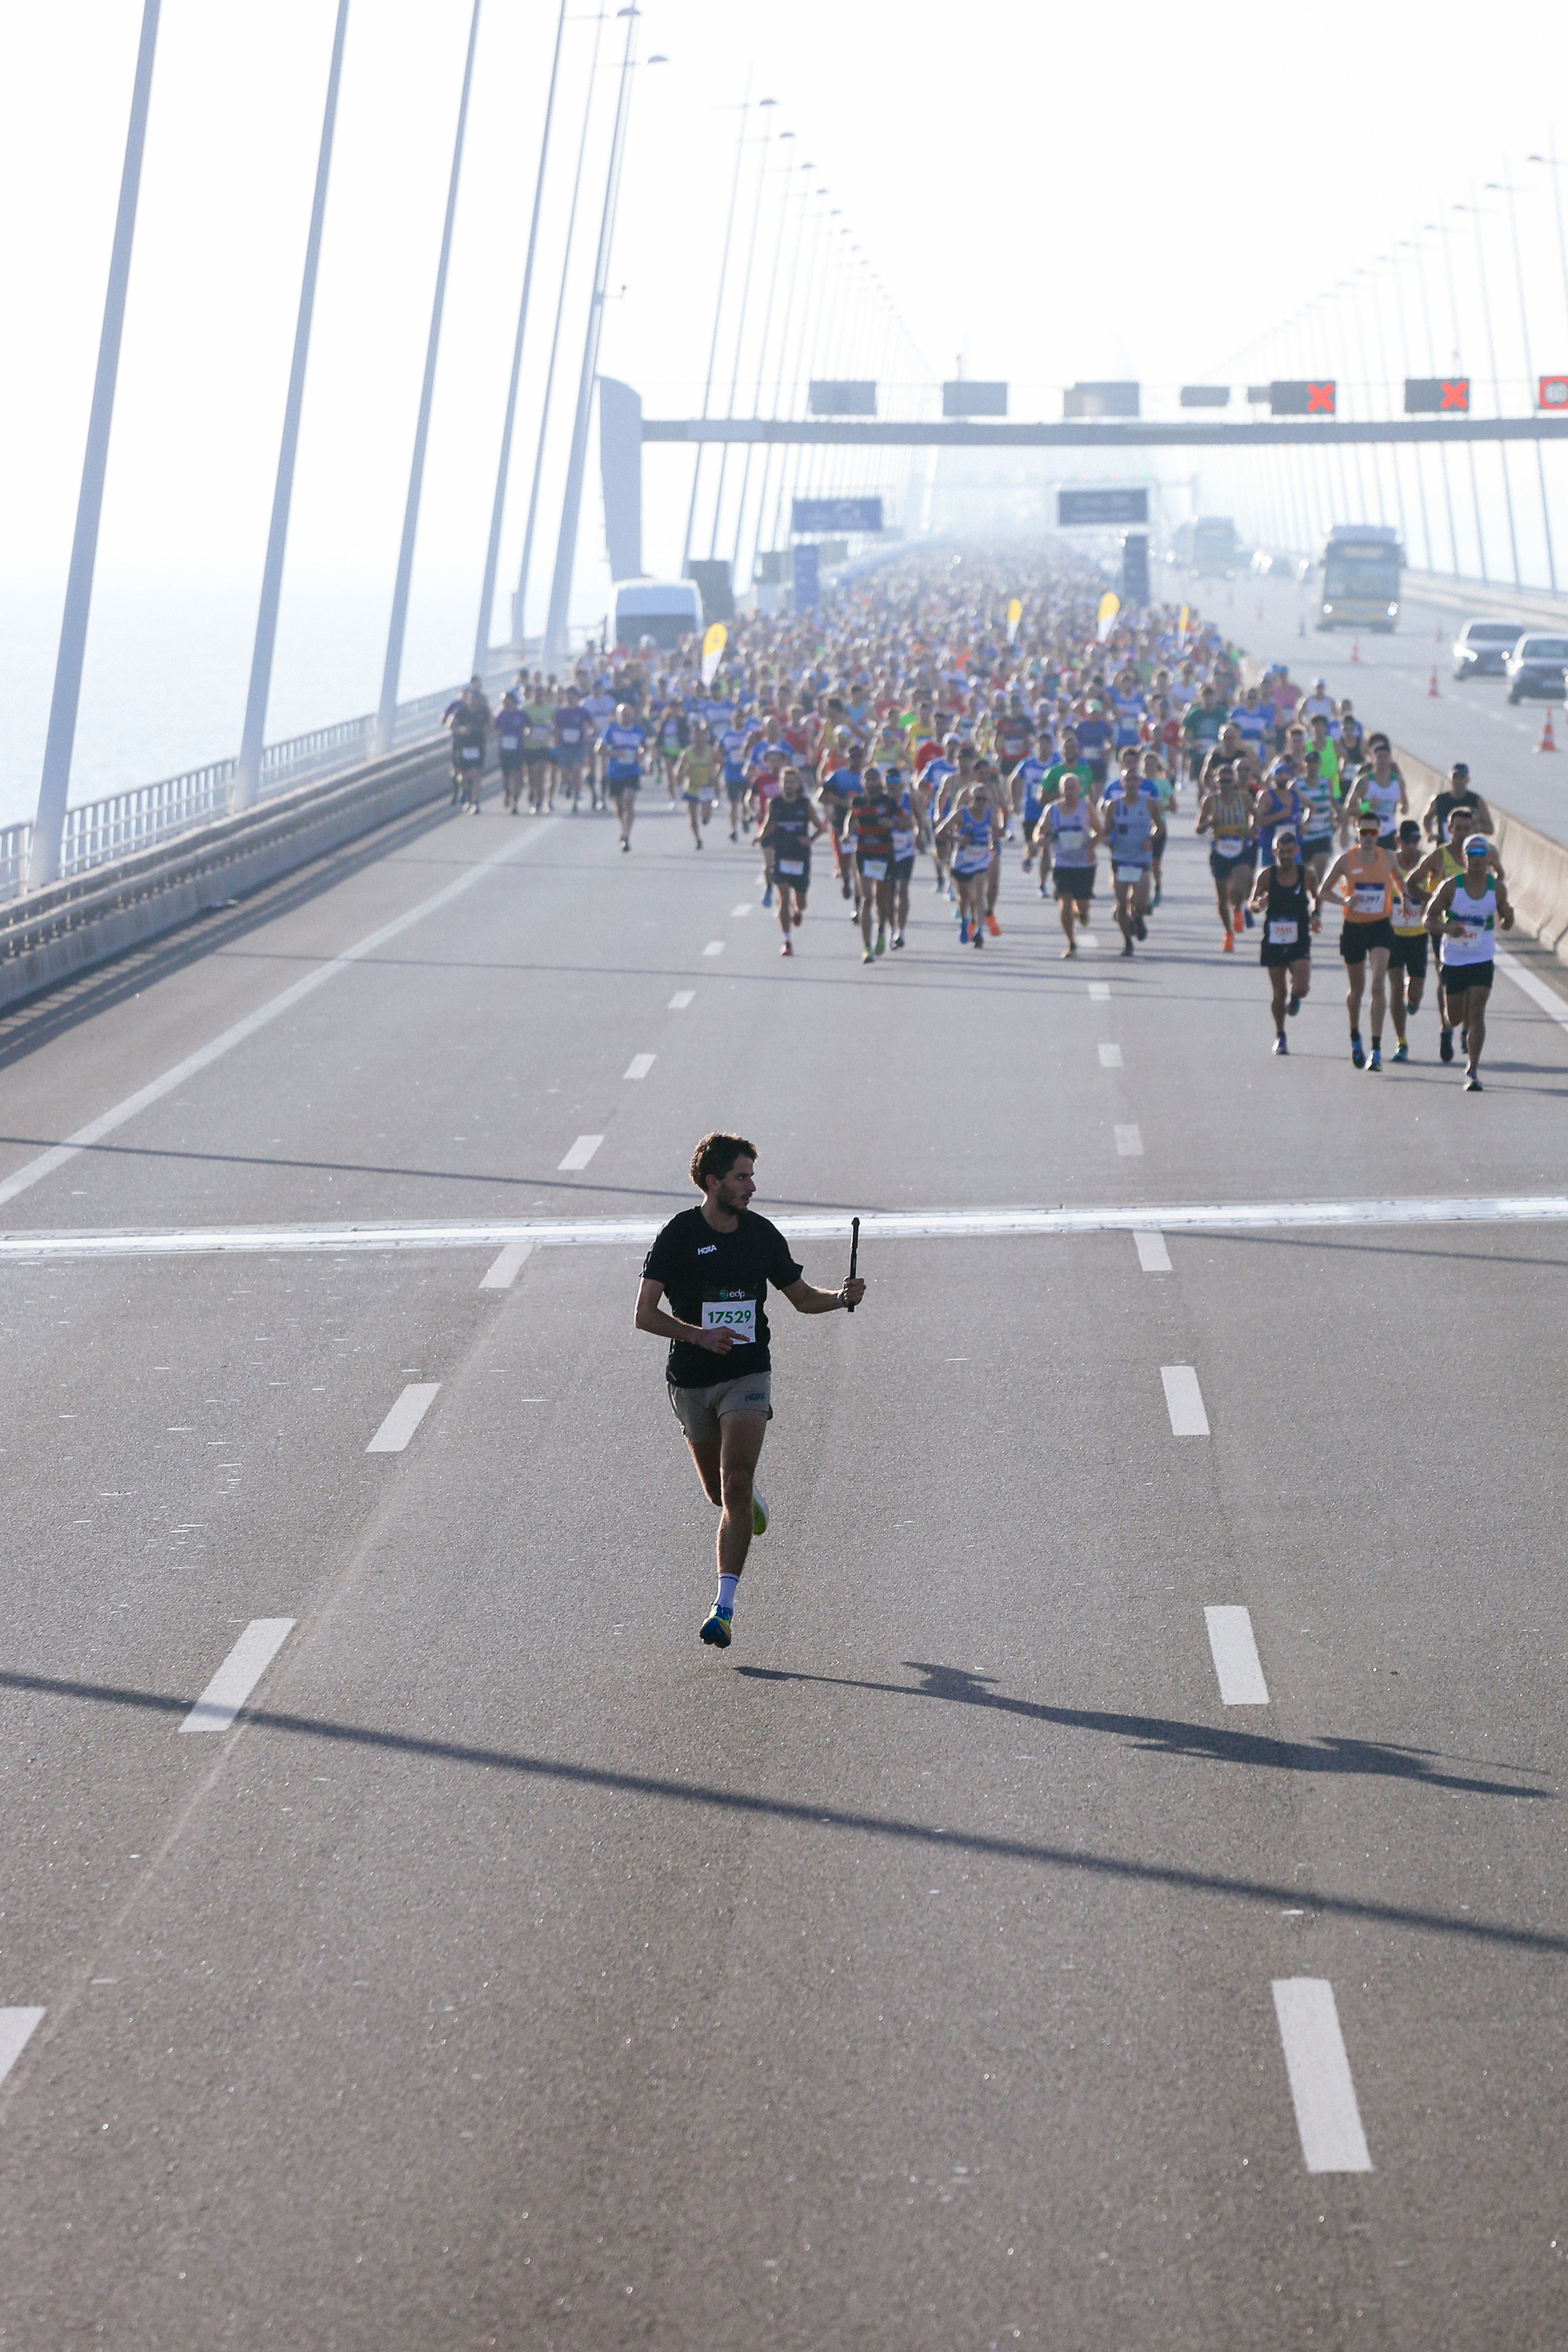 A man runs and shoots his GoPro camera, while runner follow close behind him. 